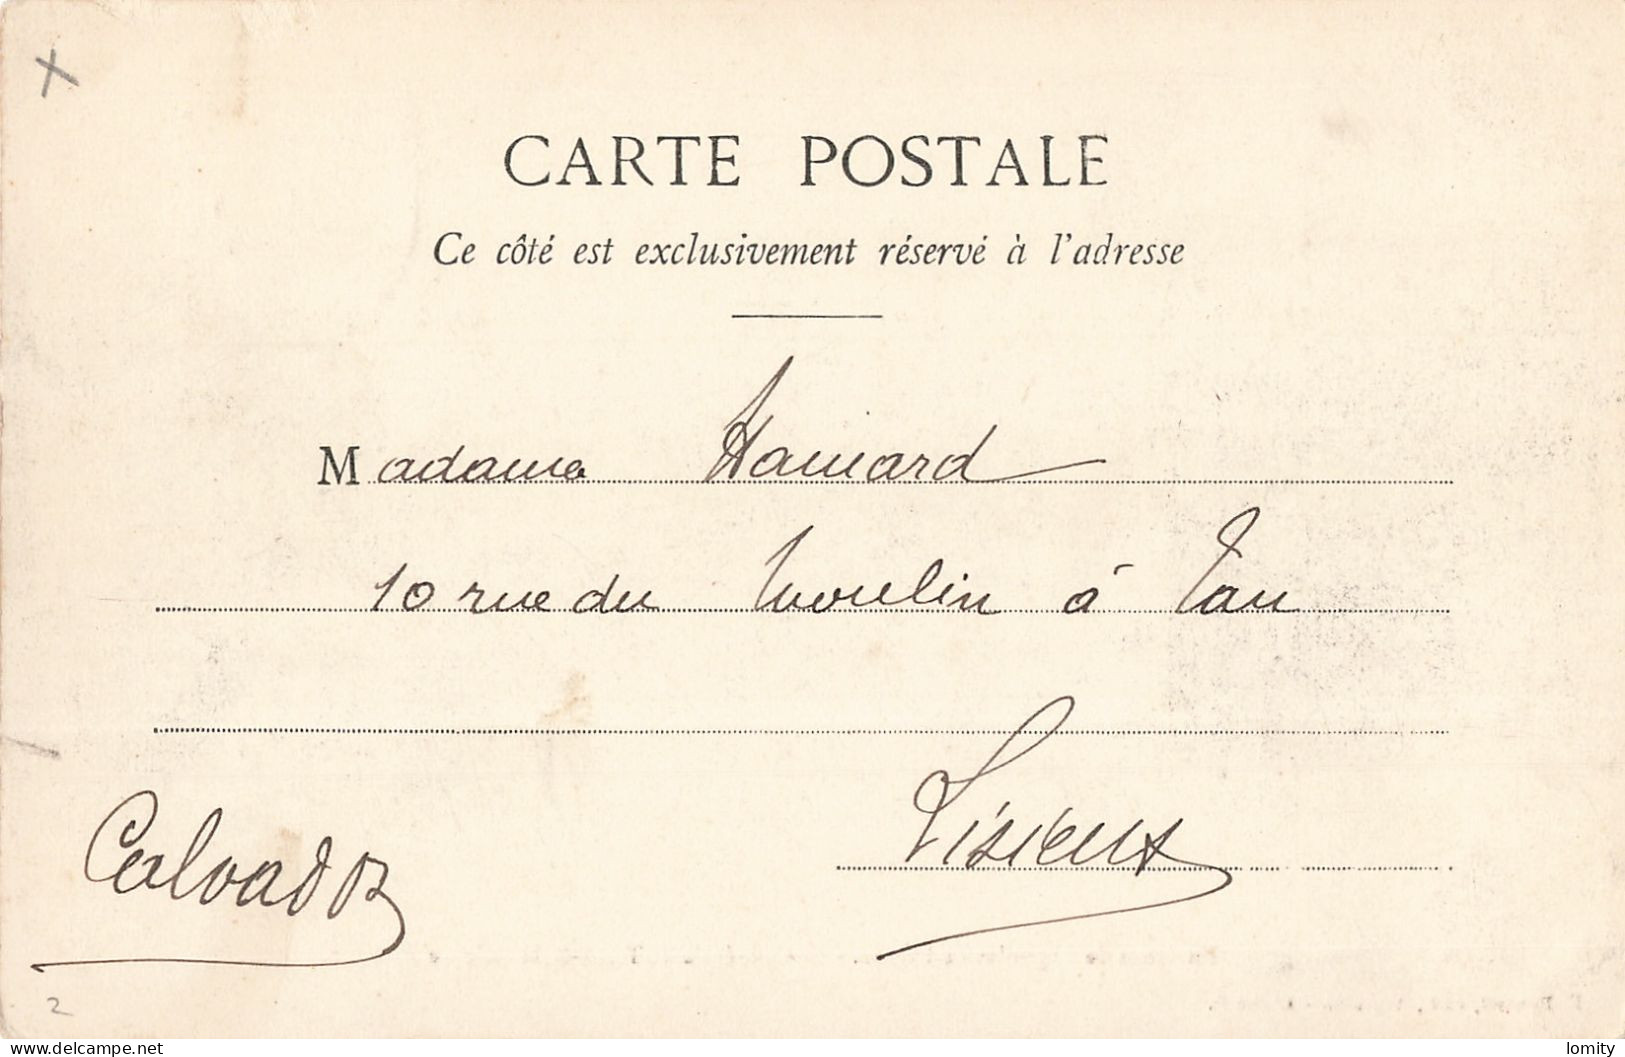 Destockage lot de 11 cartes postales CPA Orne Bagnoles mouchoir point Alencon Tessé Madeleine